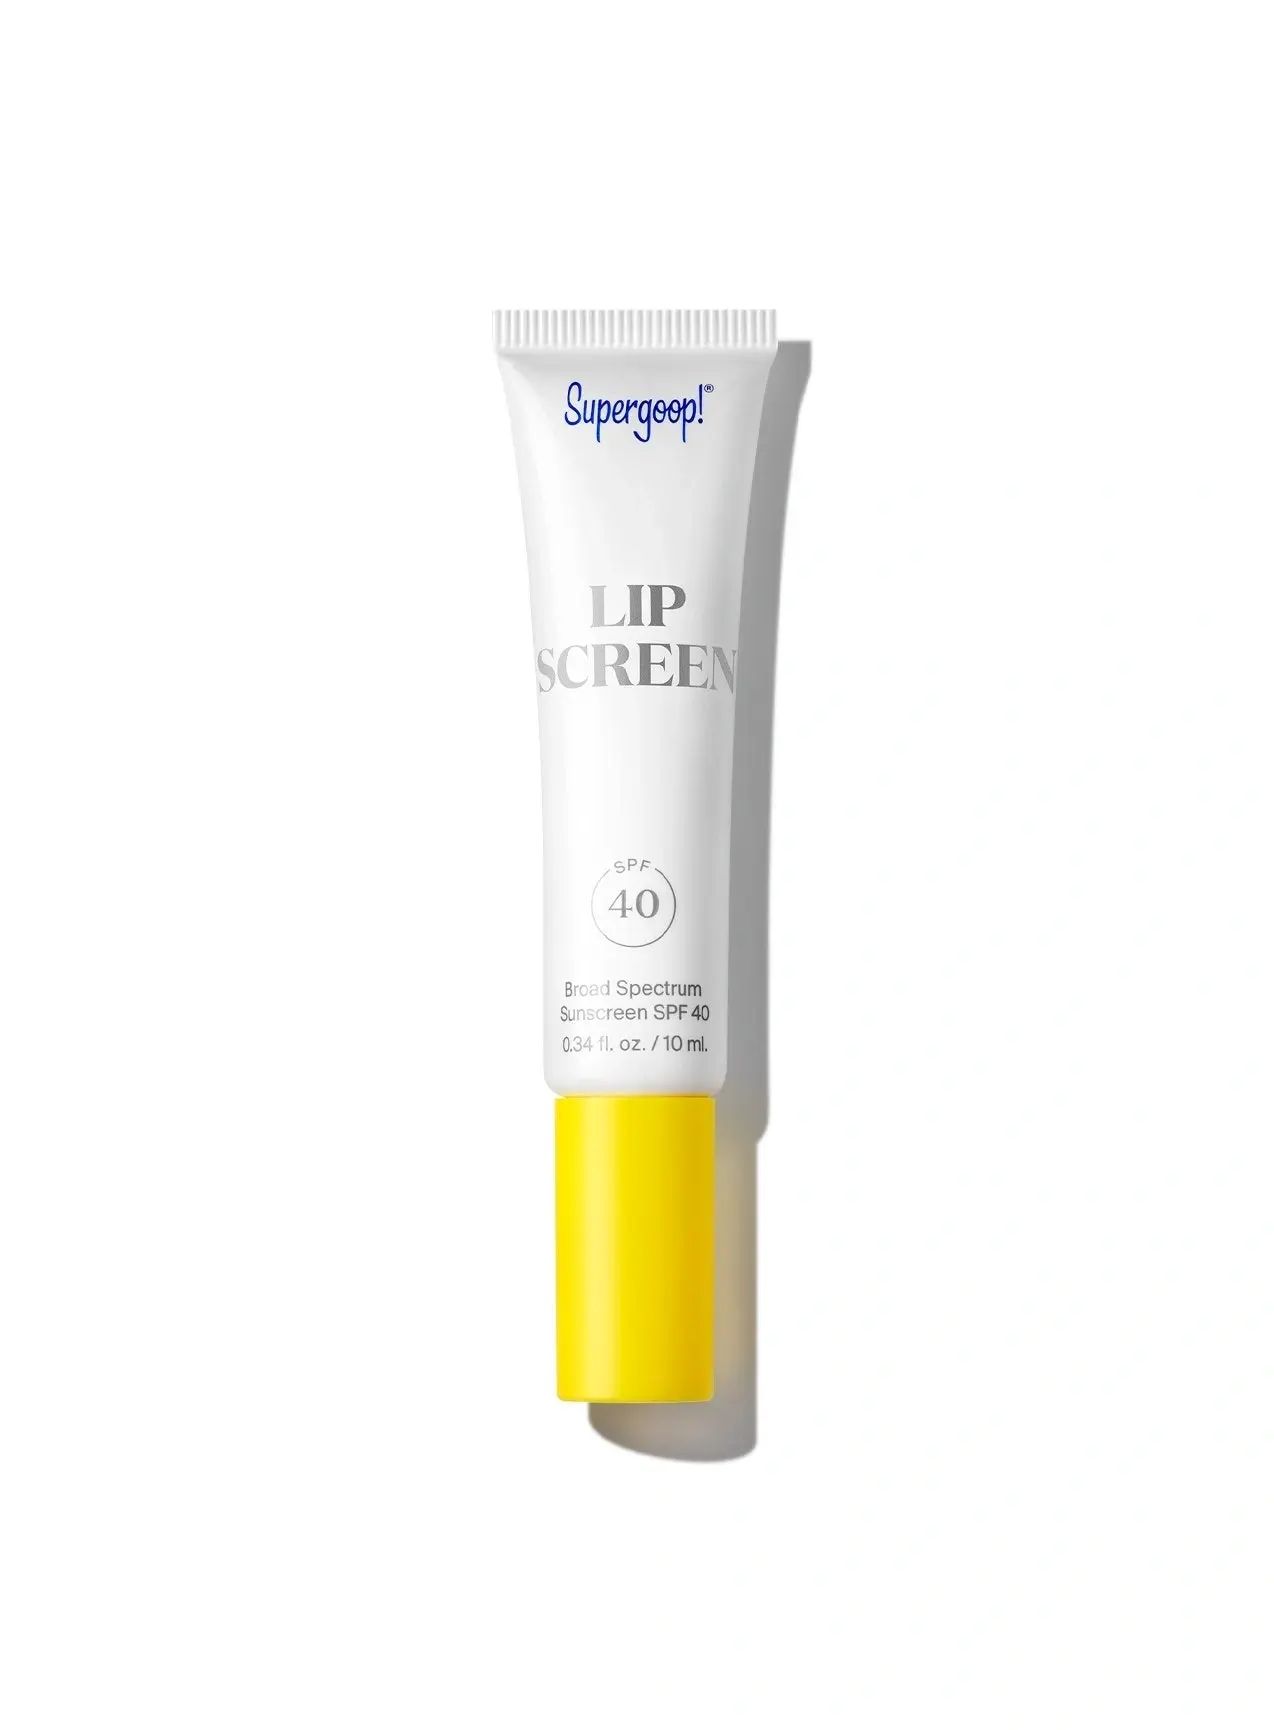 Lipscreen Shine SPF 40 | Clear Lip Gloss Sunscreen | Supergoop! | Supergoop